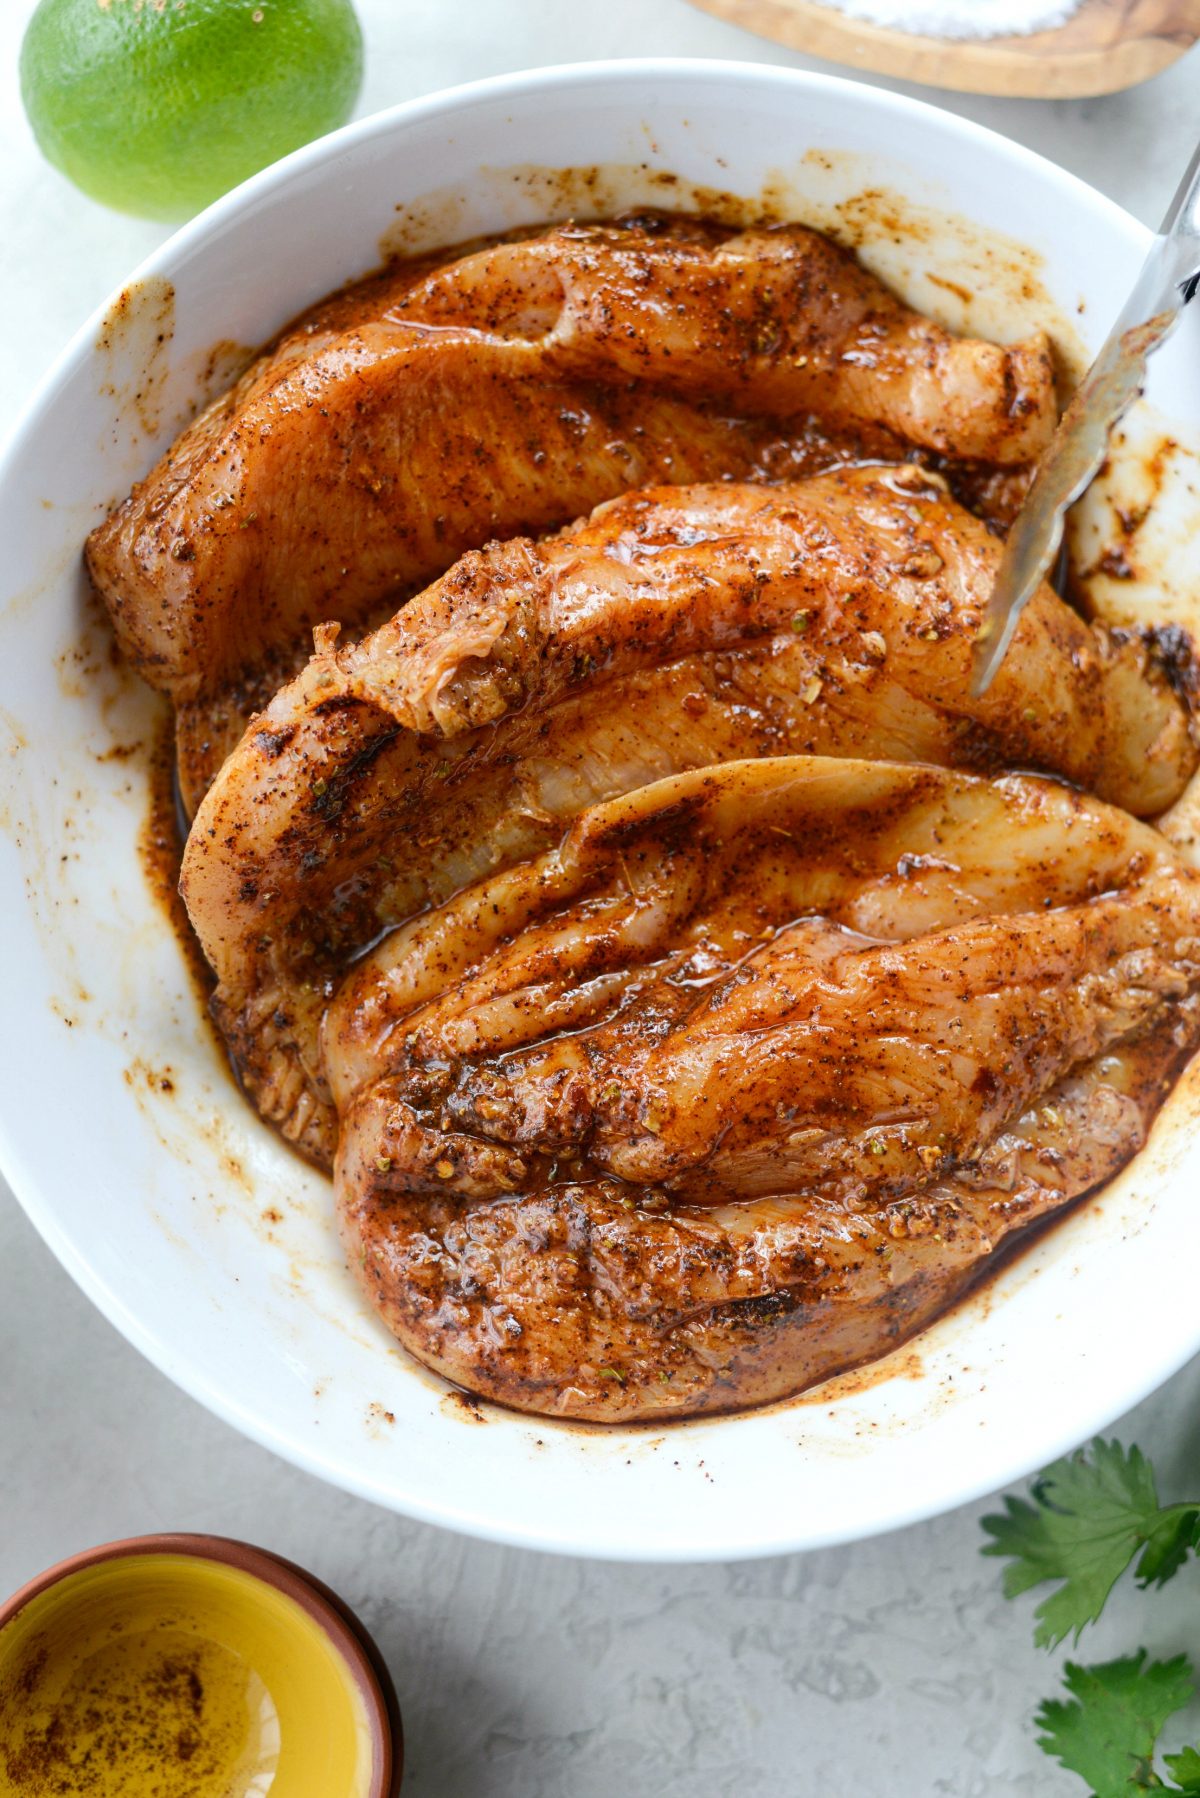 Chipotle Chicken Fajita Rice Bowls l SimplyScratch.com #chipotle #chicken #fajita #ricebowls #dinner #easy